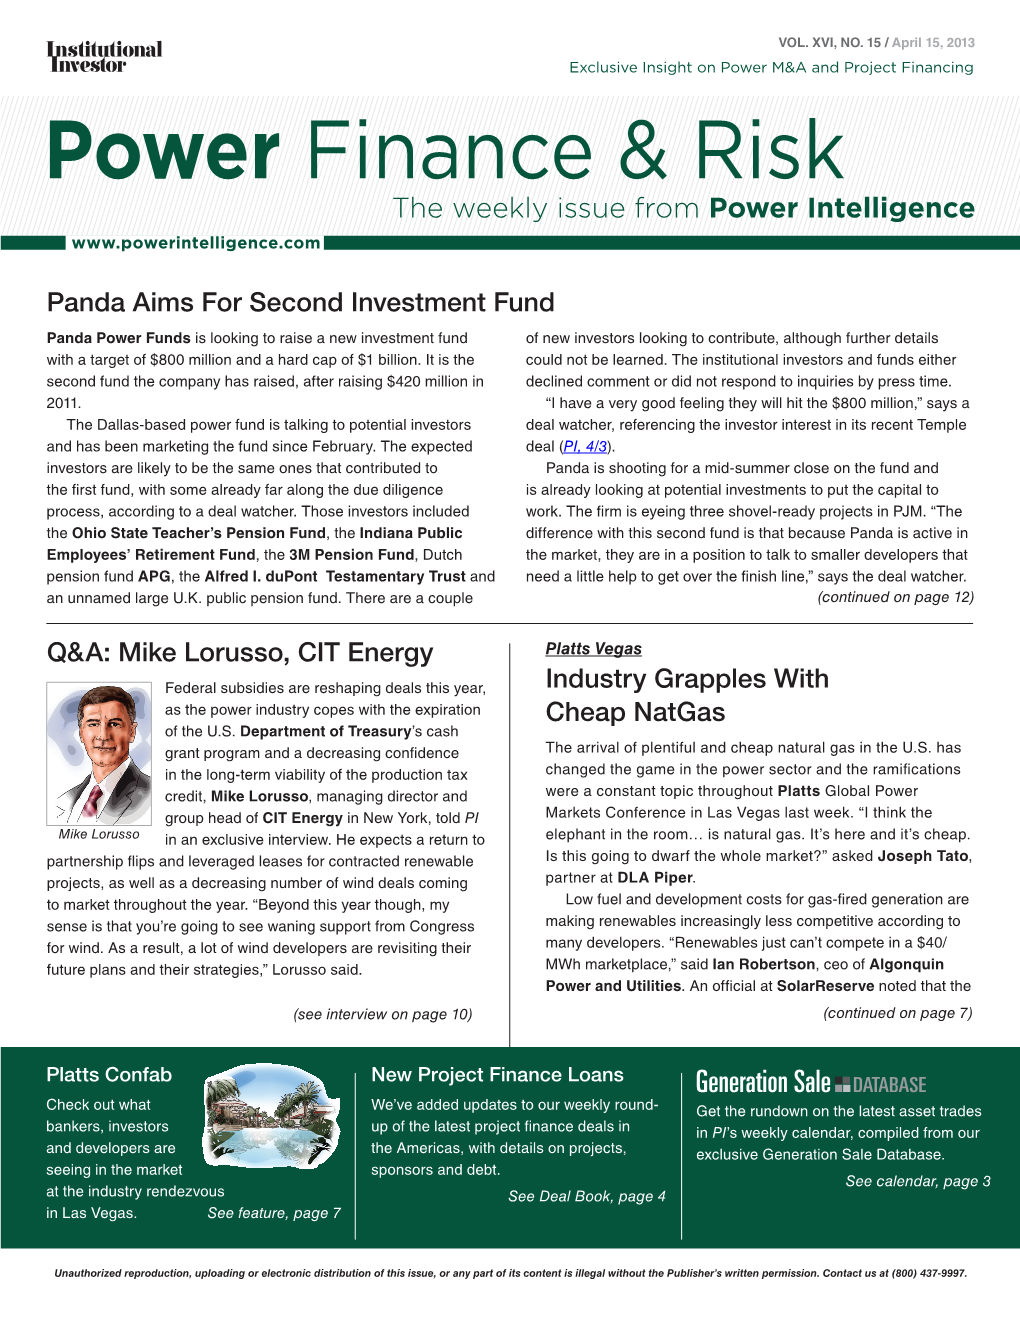 Power Finance & Risk